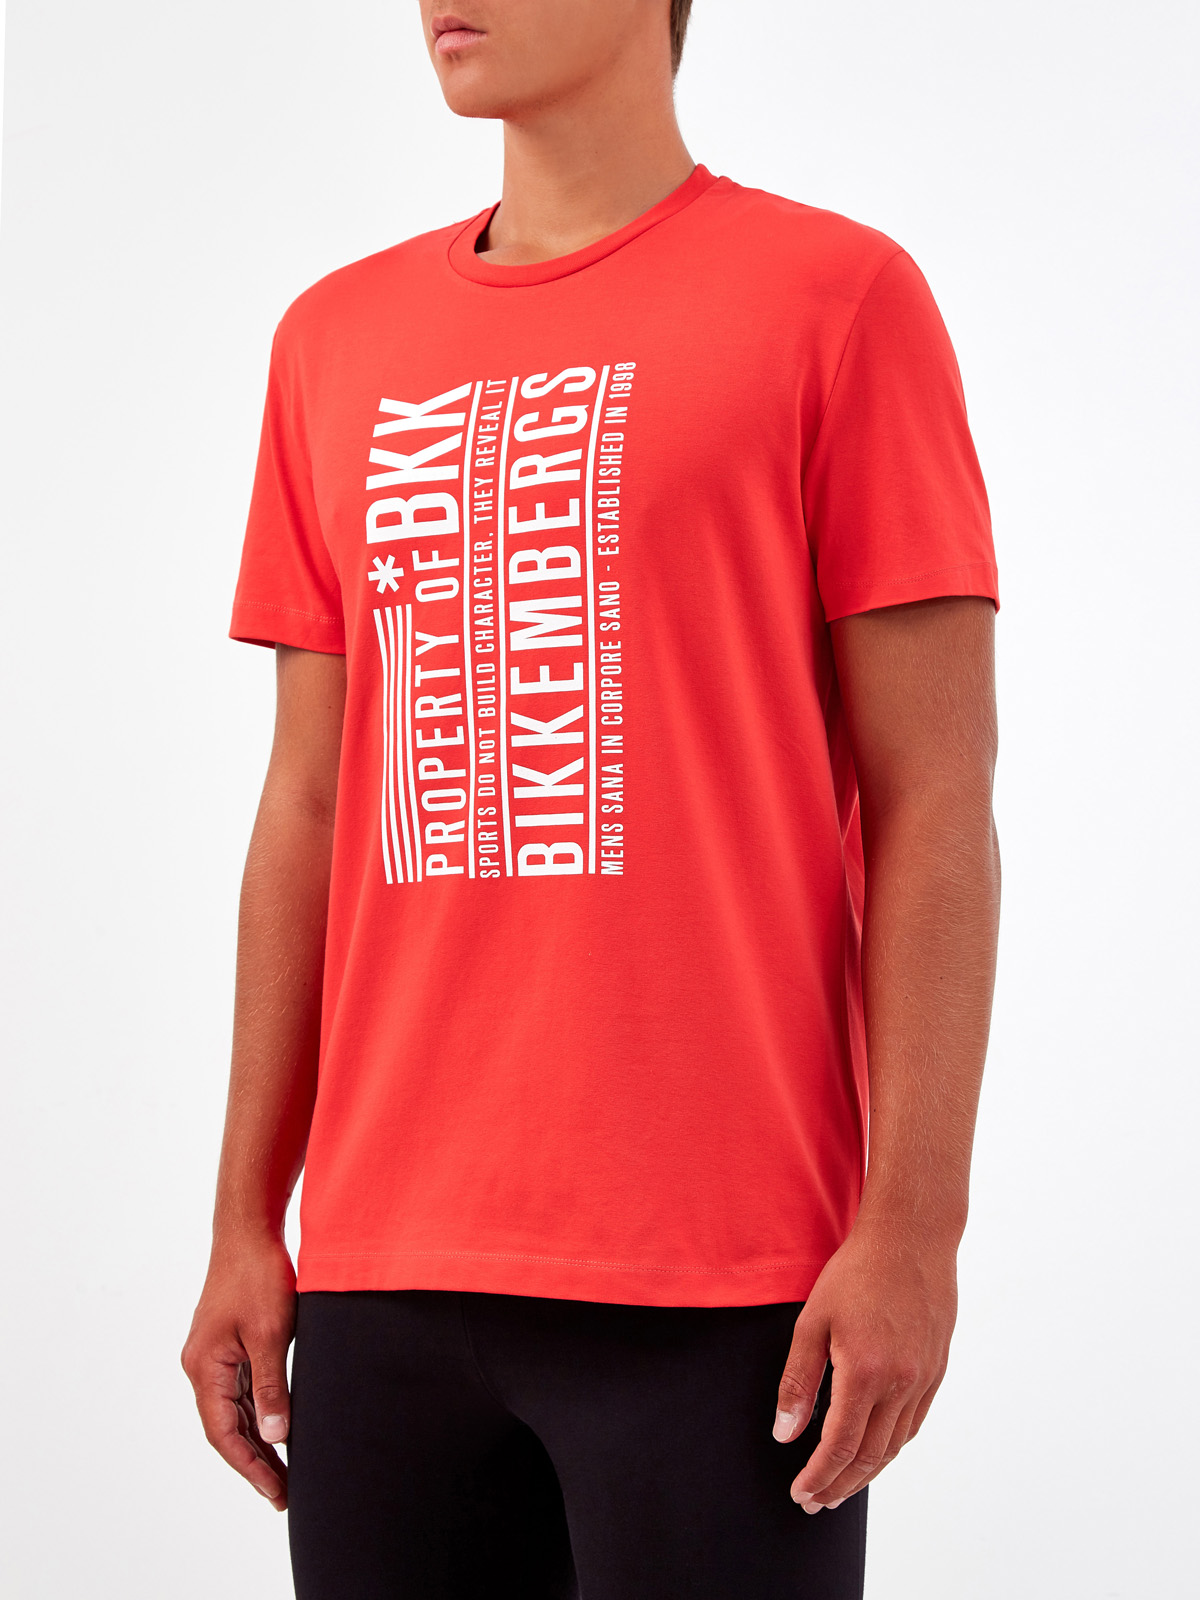 Яркая футболка из хлопка с принтом Property of BKK BIKKEMBERGS, цвет красный, размер XL;2XL;3XL;L - фото 3